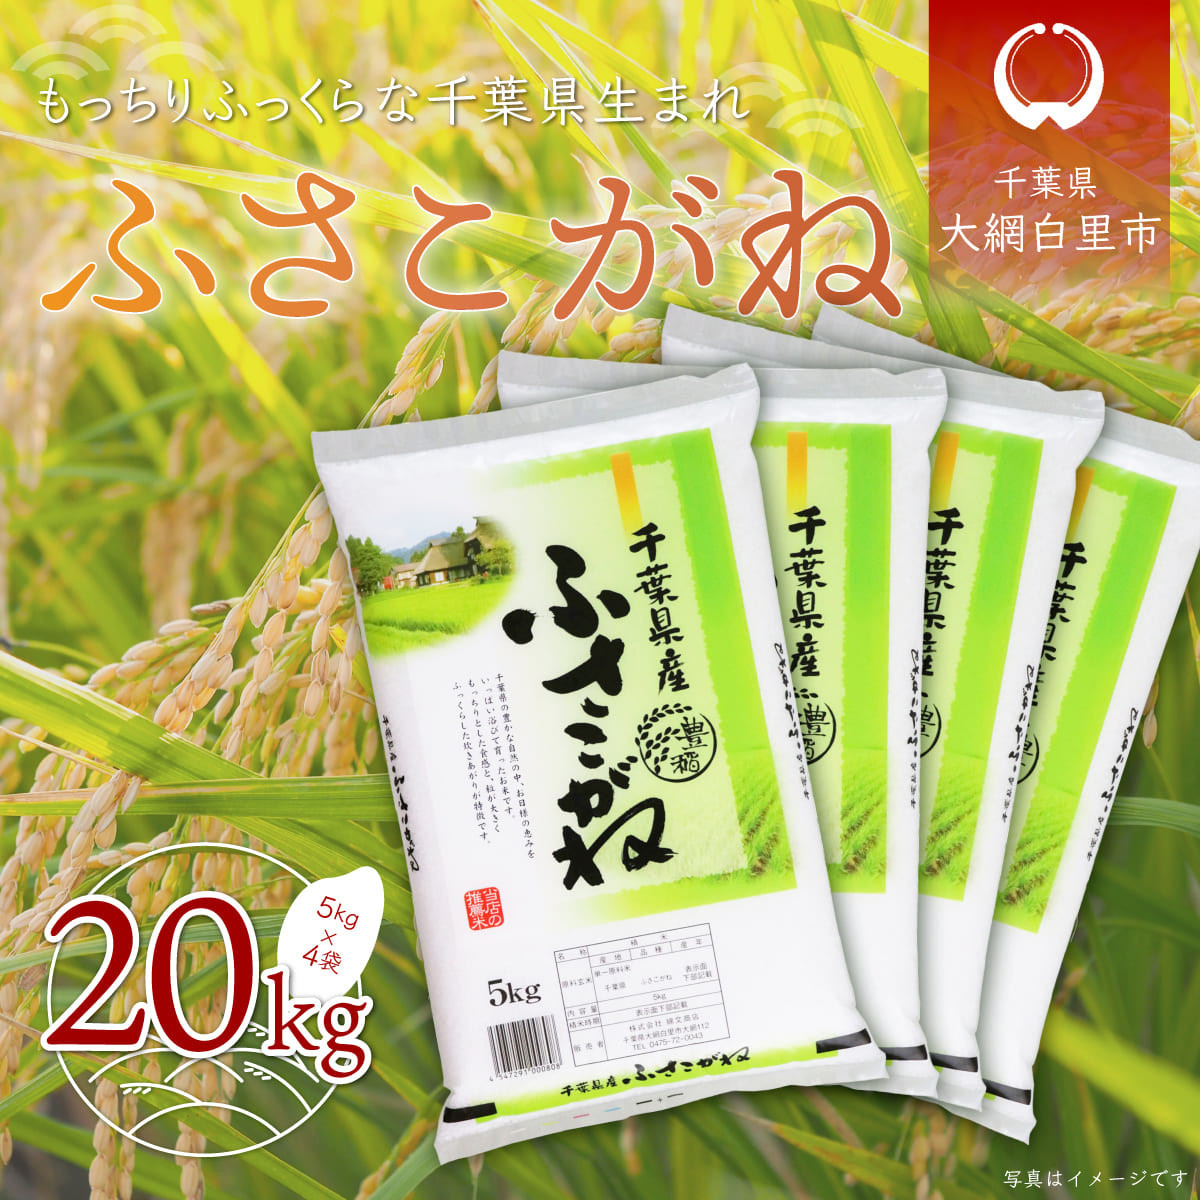 令和5年産 新麦 もち麦 ダイシモチ 20kg (5kg×4袋) 岡山県産 紫もち麦 送料無料